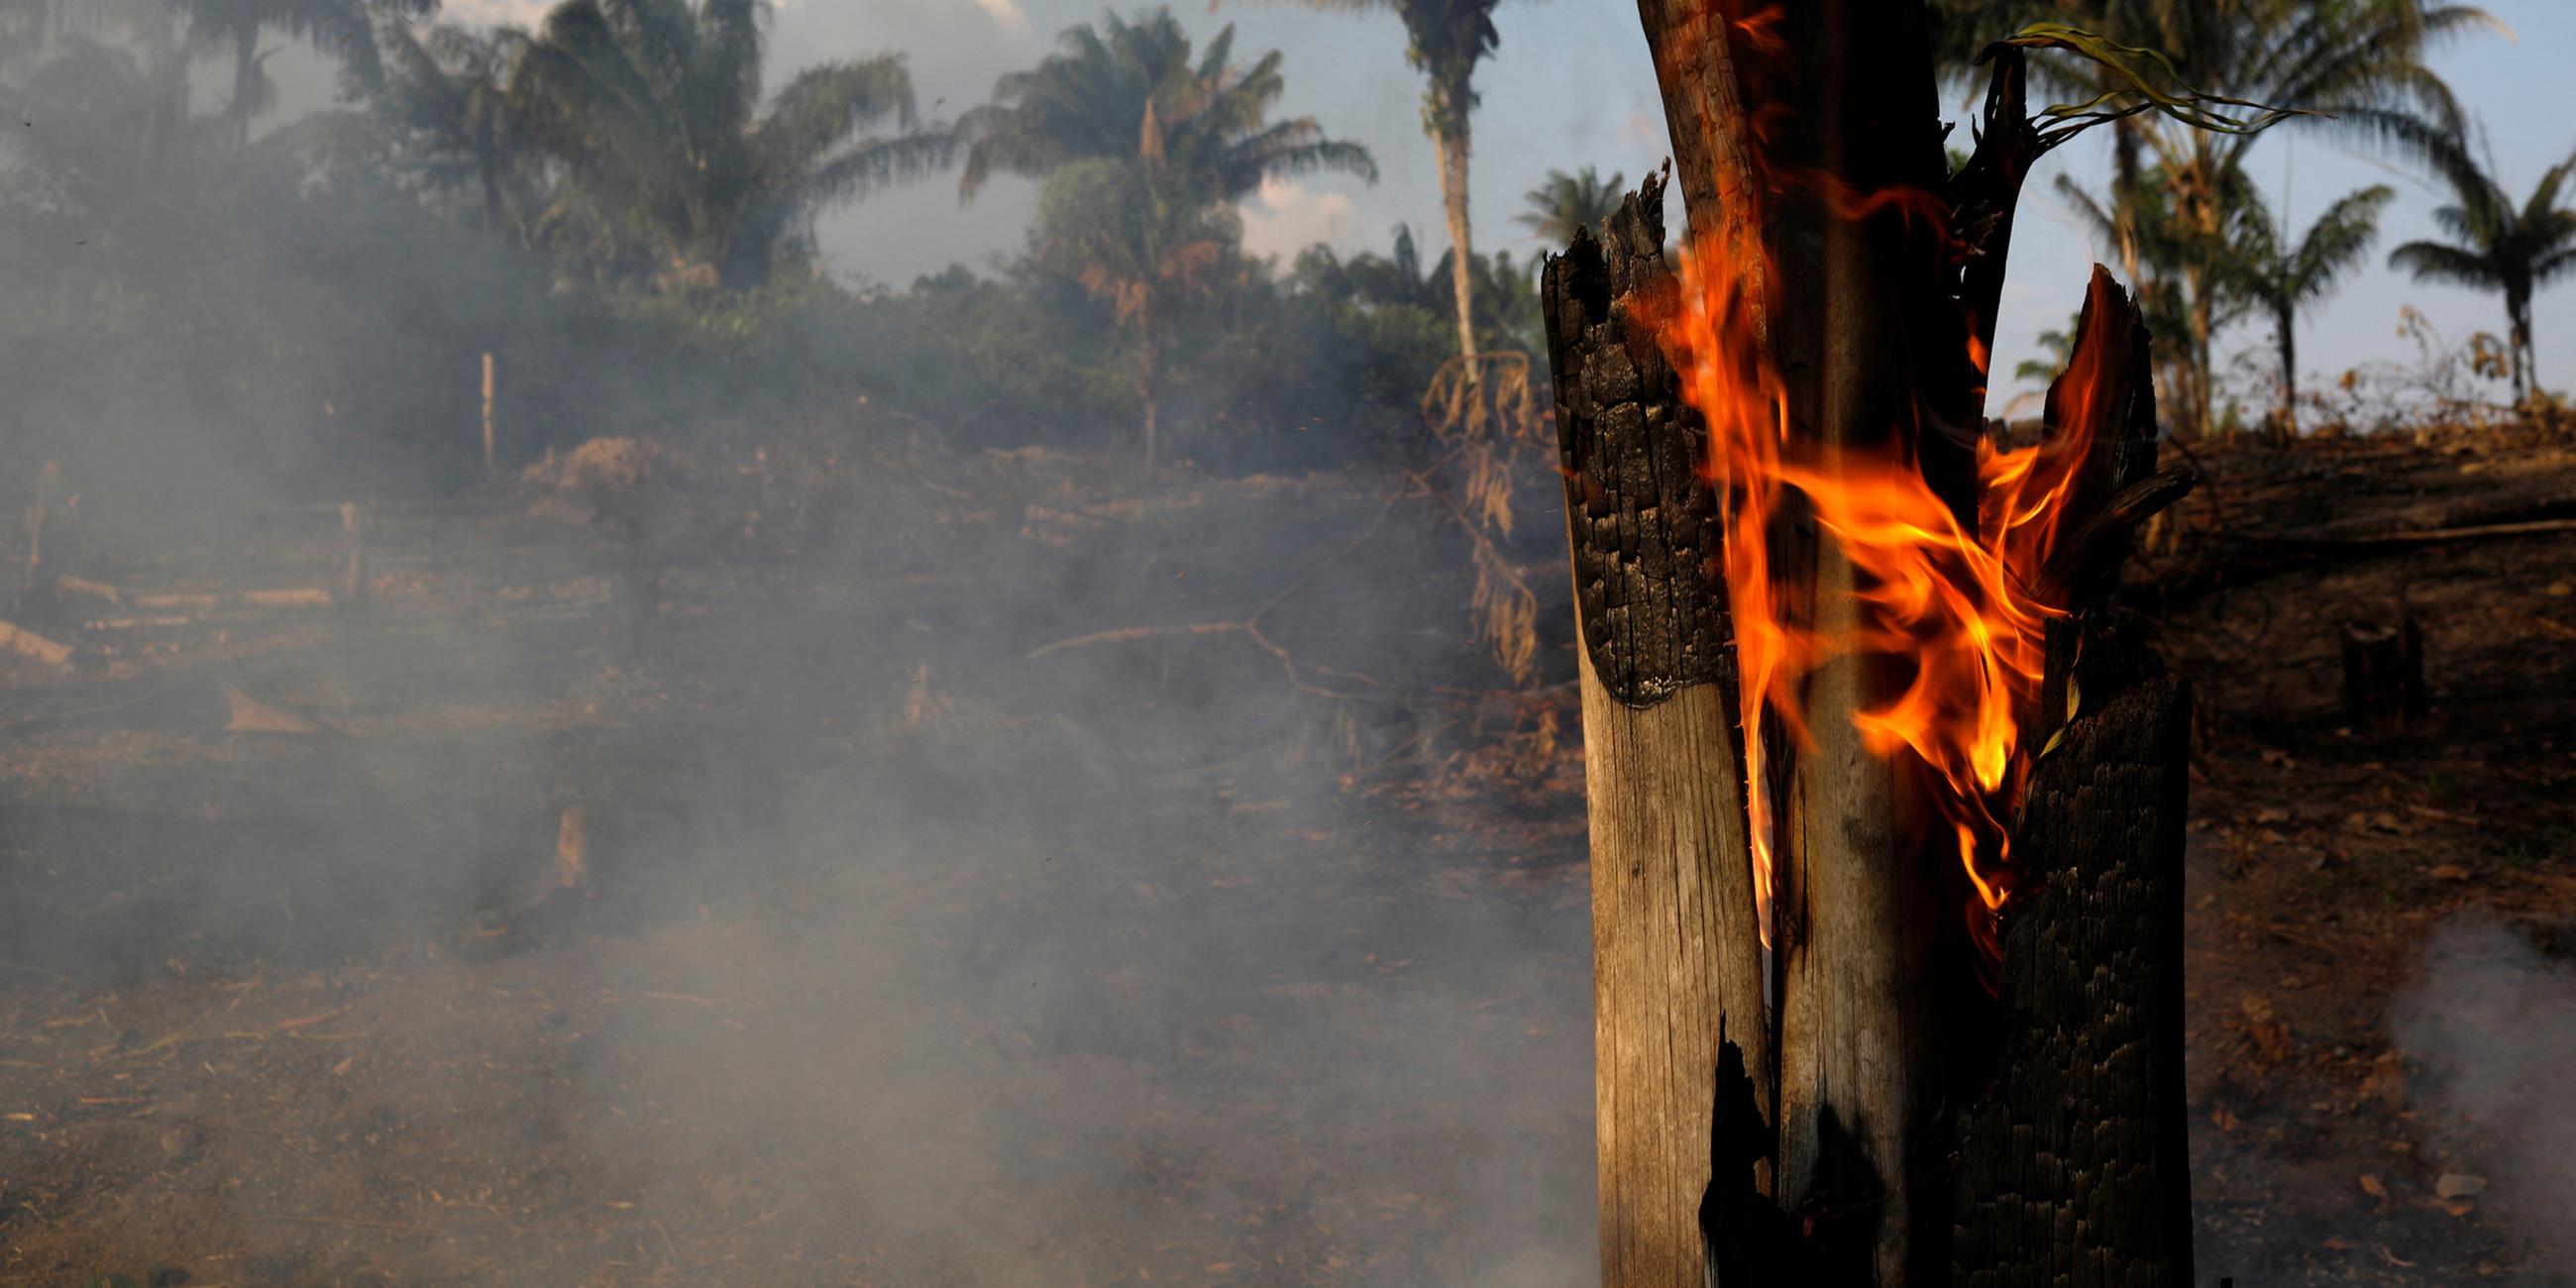 Ein brennender Baum im Amazonas-Regenwald am 20.08.2019